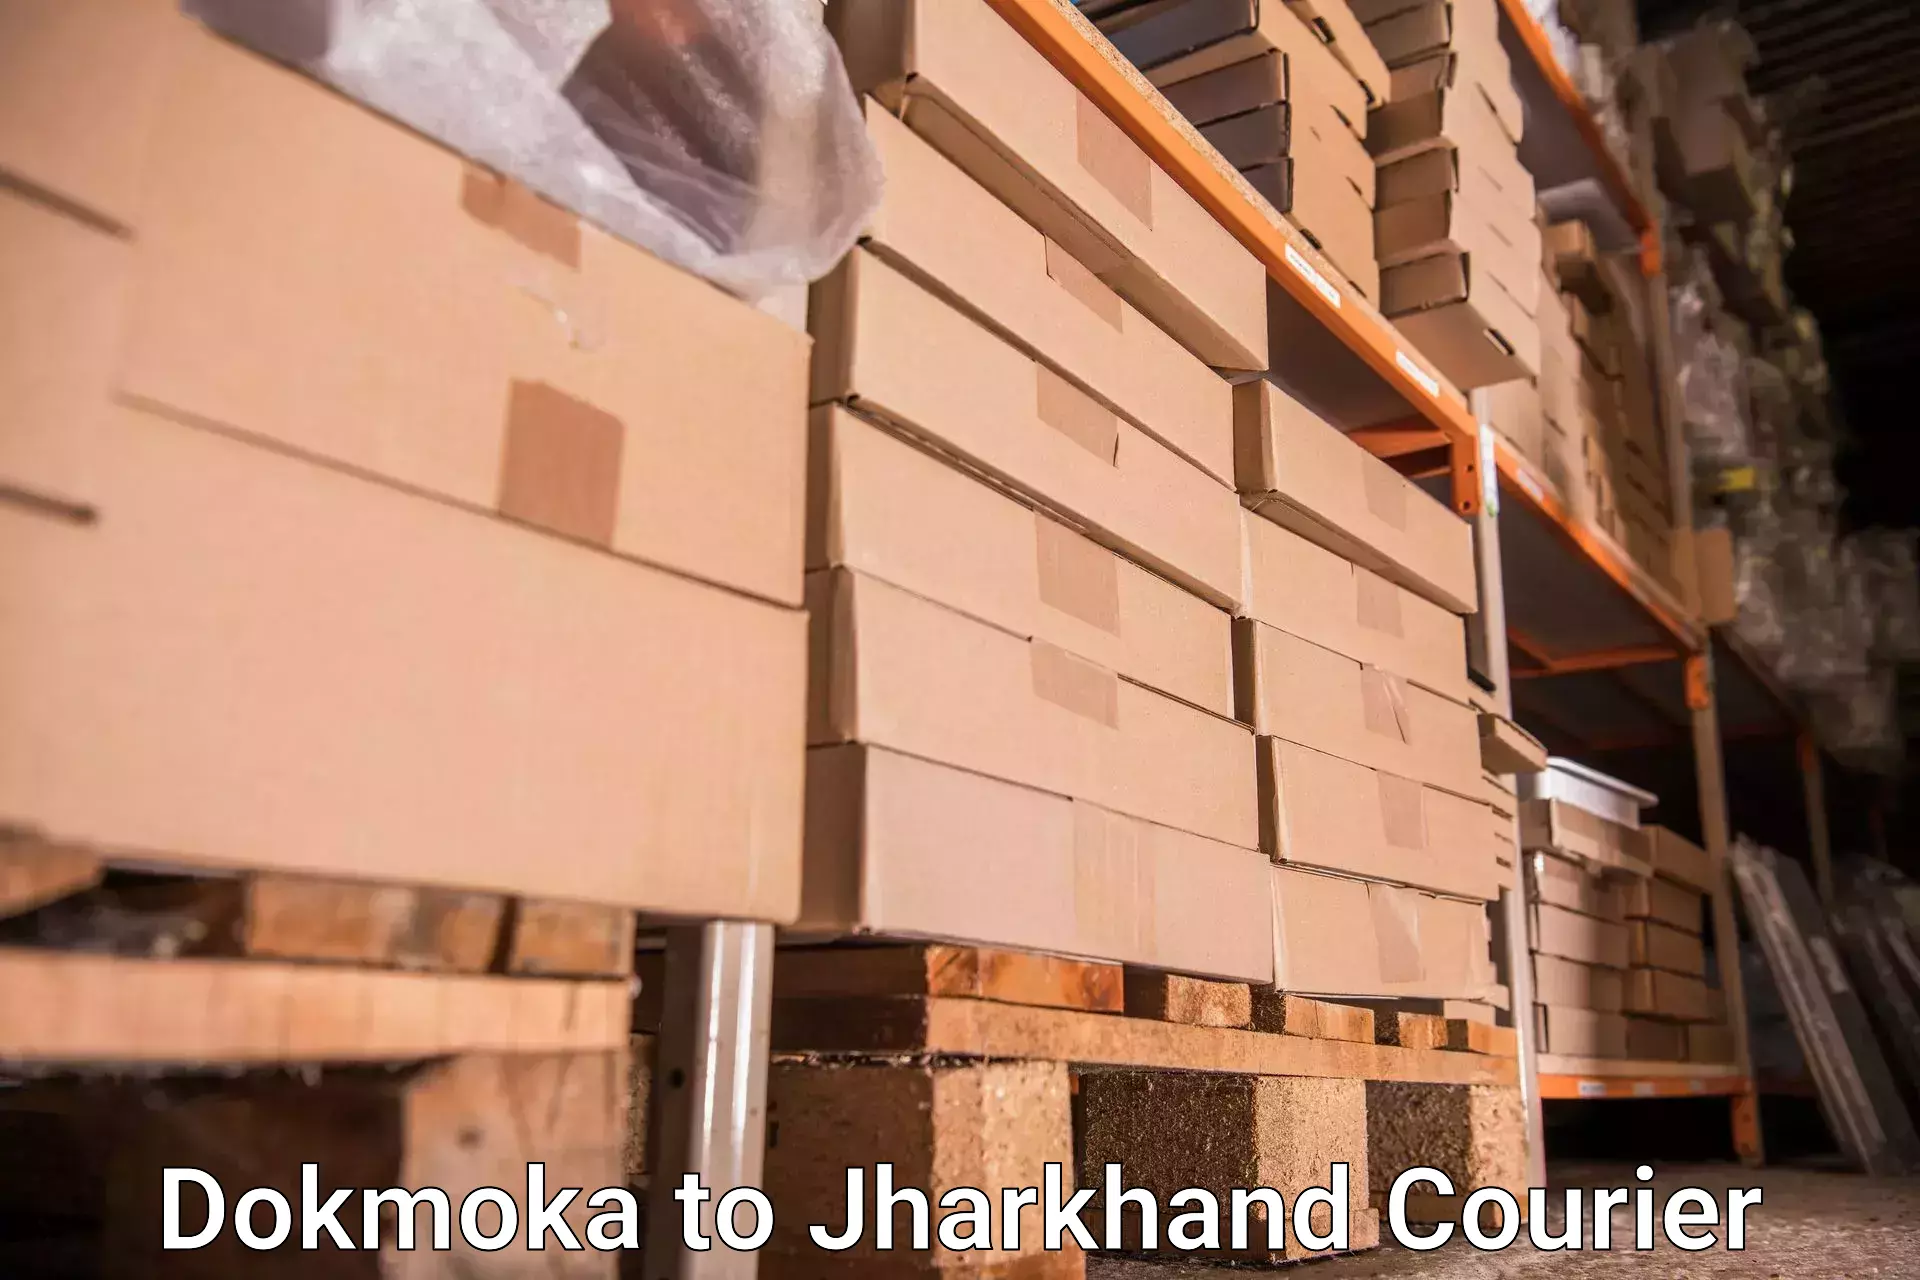 Luggage shipment specialists Dokmoka to Tamar